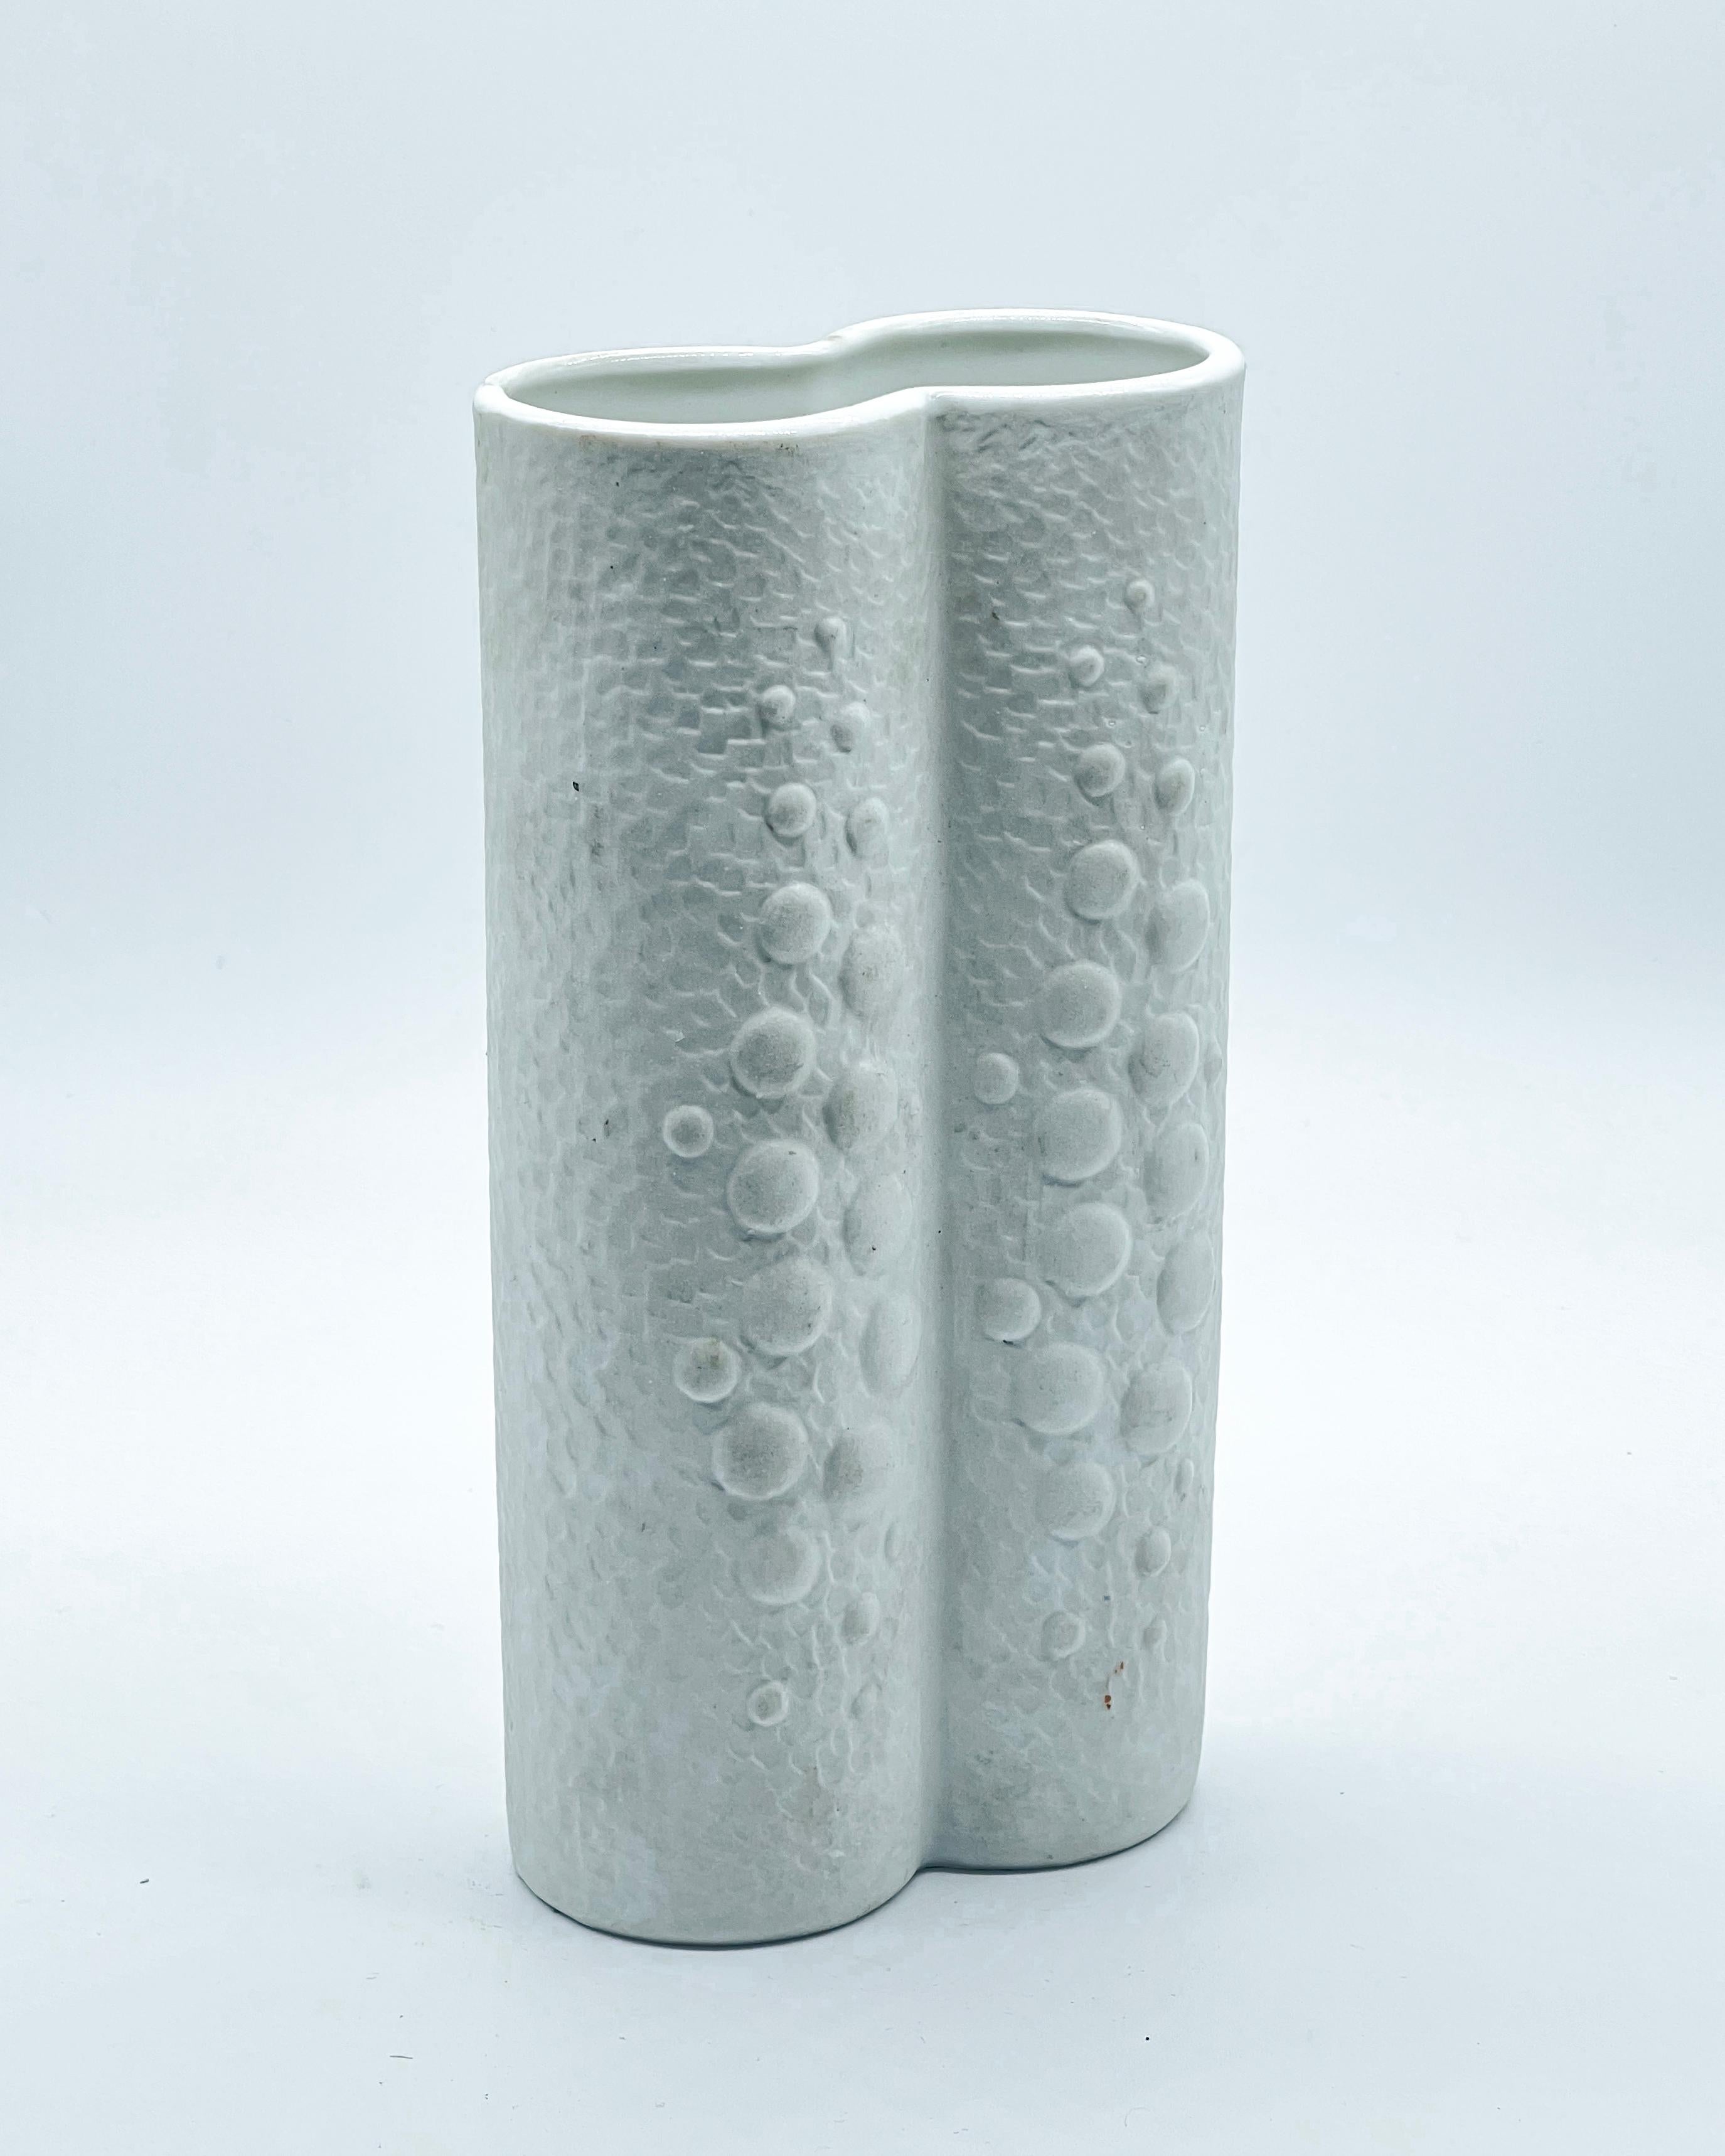 Weiße Porzellanvase - Feine Keramikvase - Dekorative handgefertigte Vase

Schöne Vintage-Vase aus weißem Porzellan, handgefertigt und signiert 